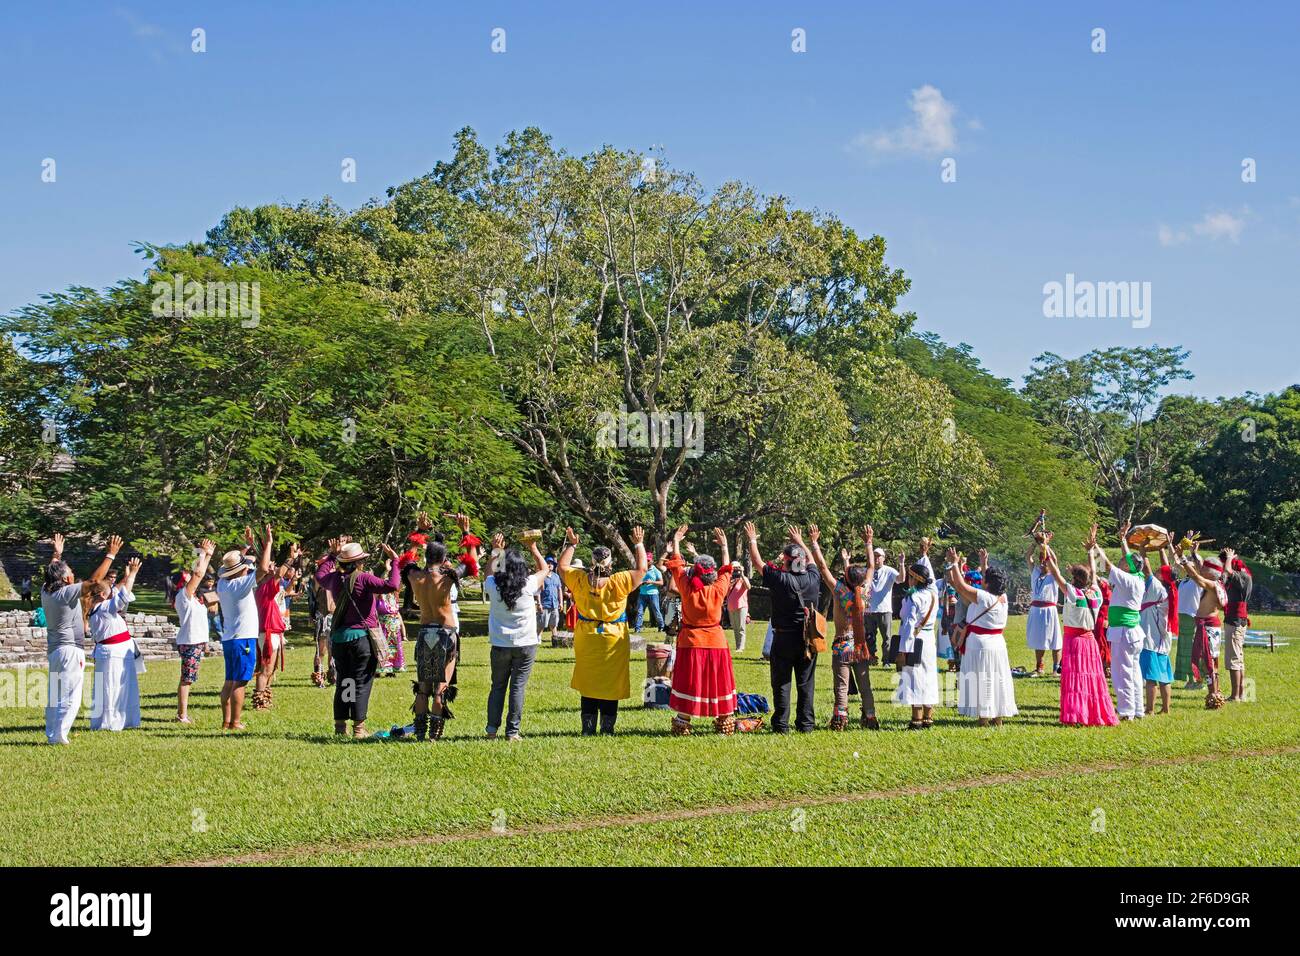 Turisti e messicani in abiti tradizionali Maya che celebrano l'equinozio di primavera al sito pre-colombiano della civiltà Maya di Palenque, Chiapas, Messico Foto Stock